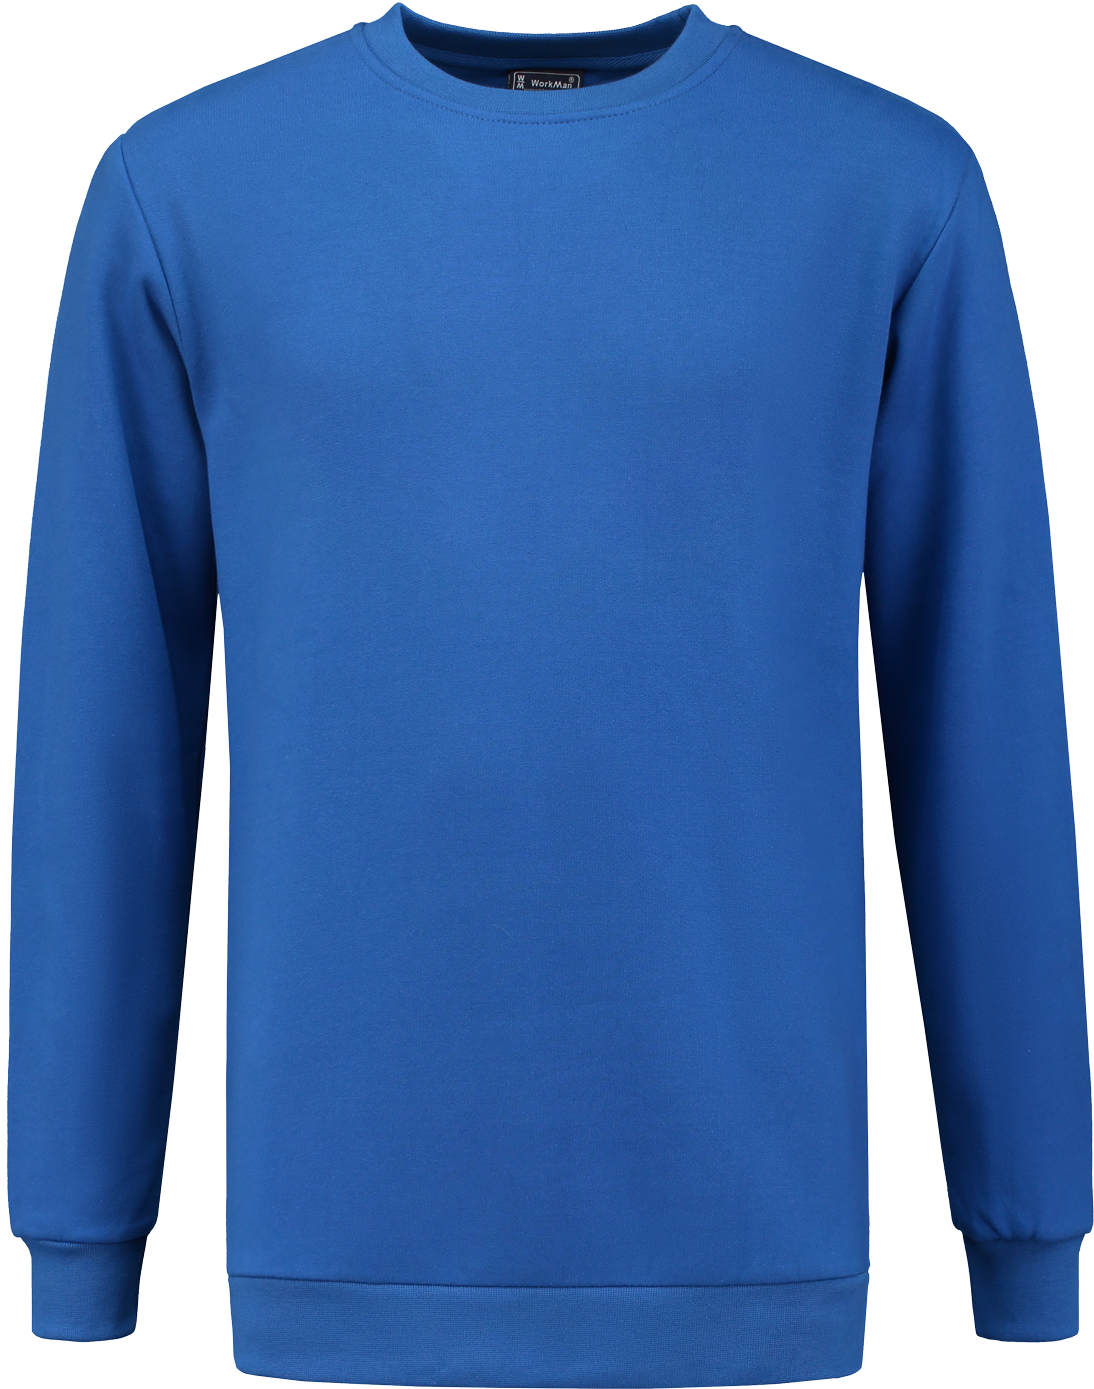 8204 Sweatshirt Outfitters Königsblau